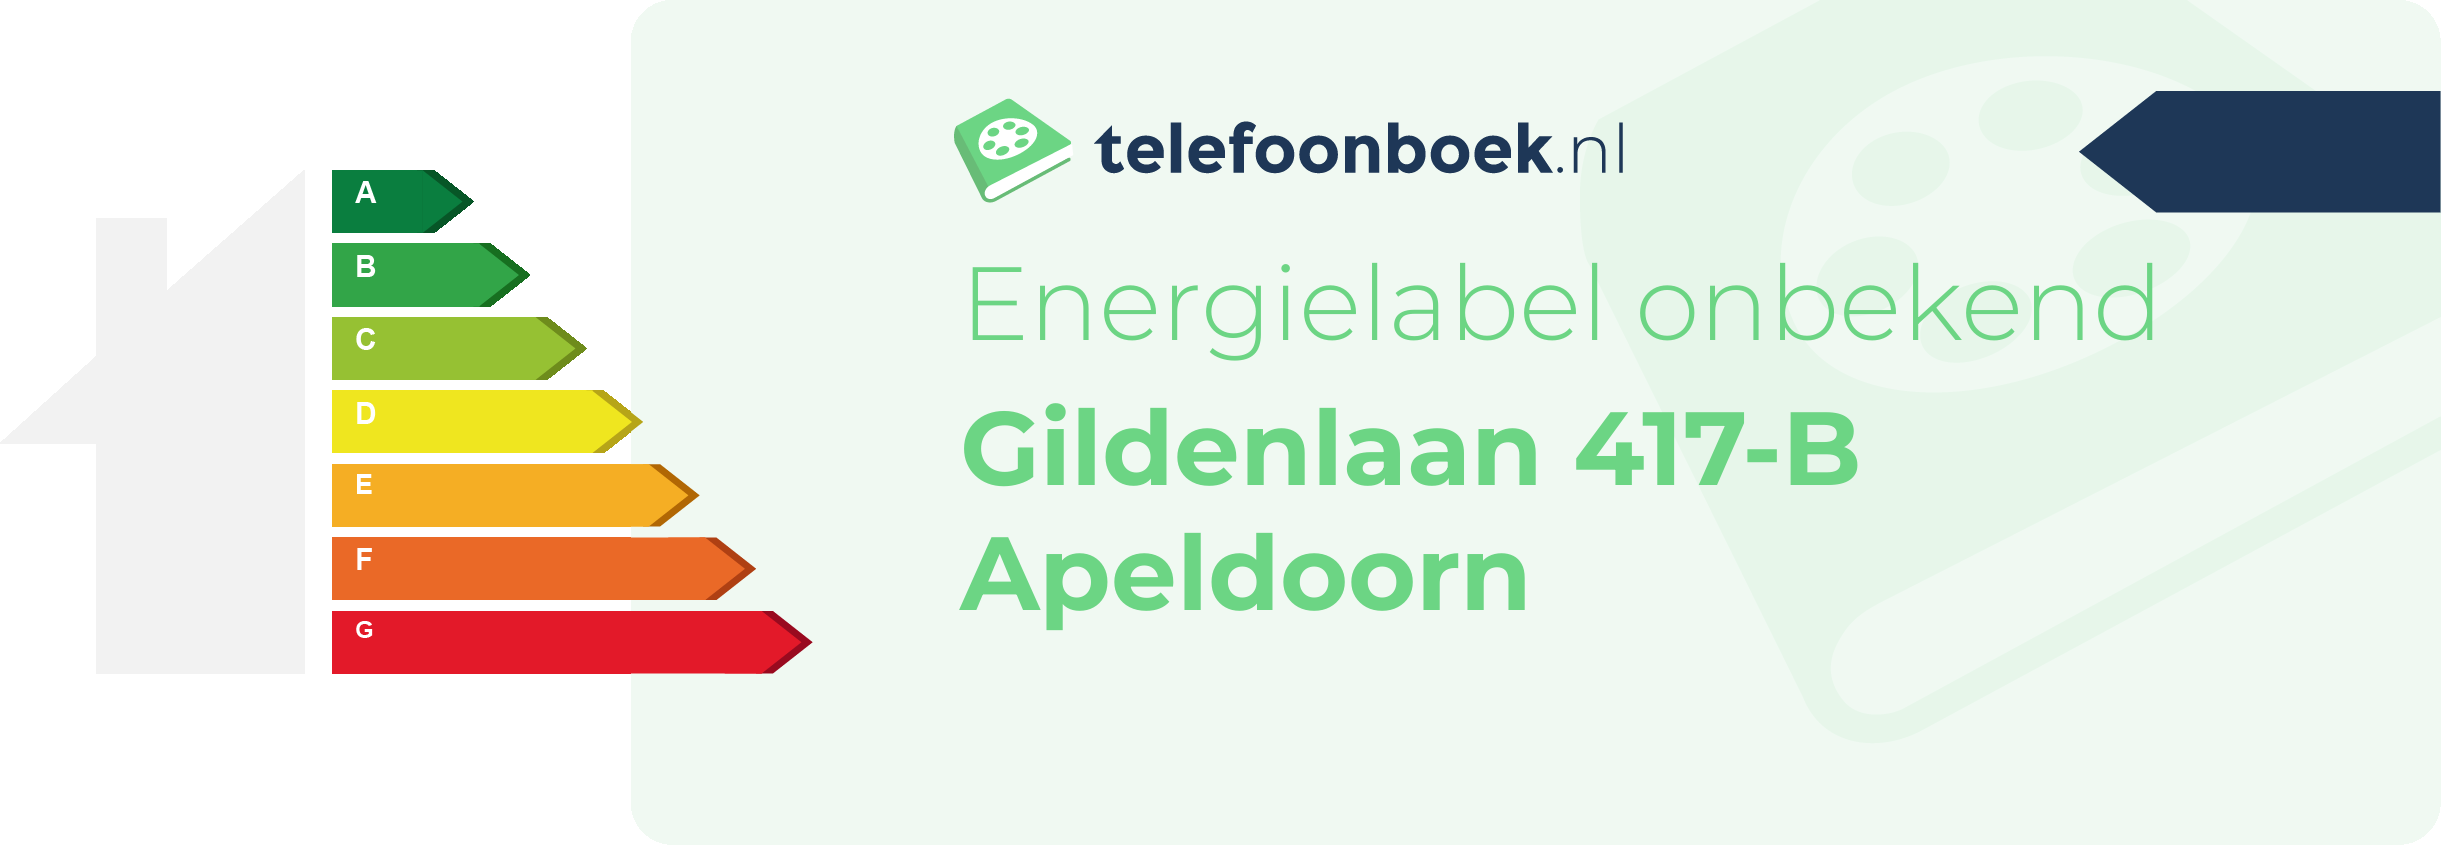 Energielabel Gildenlaan 417-B Apeldoorn